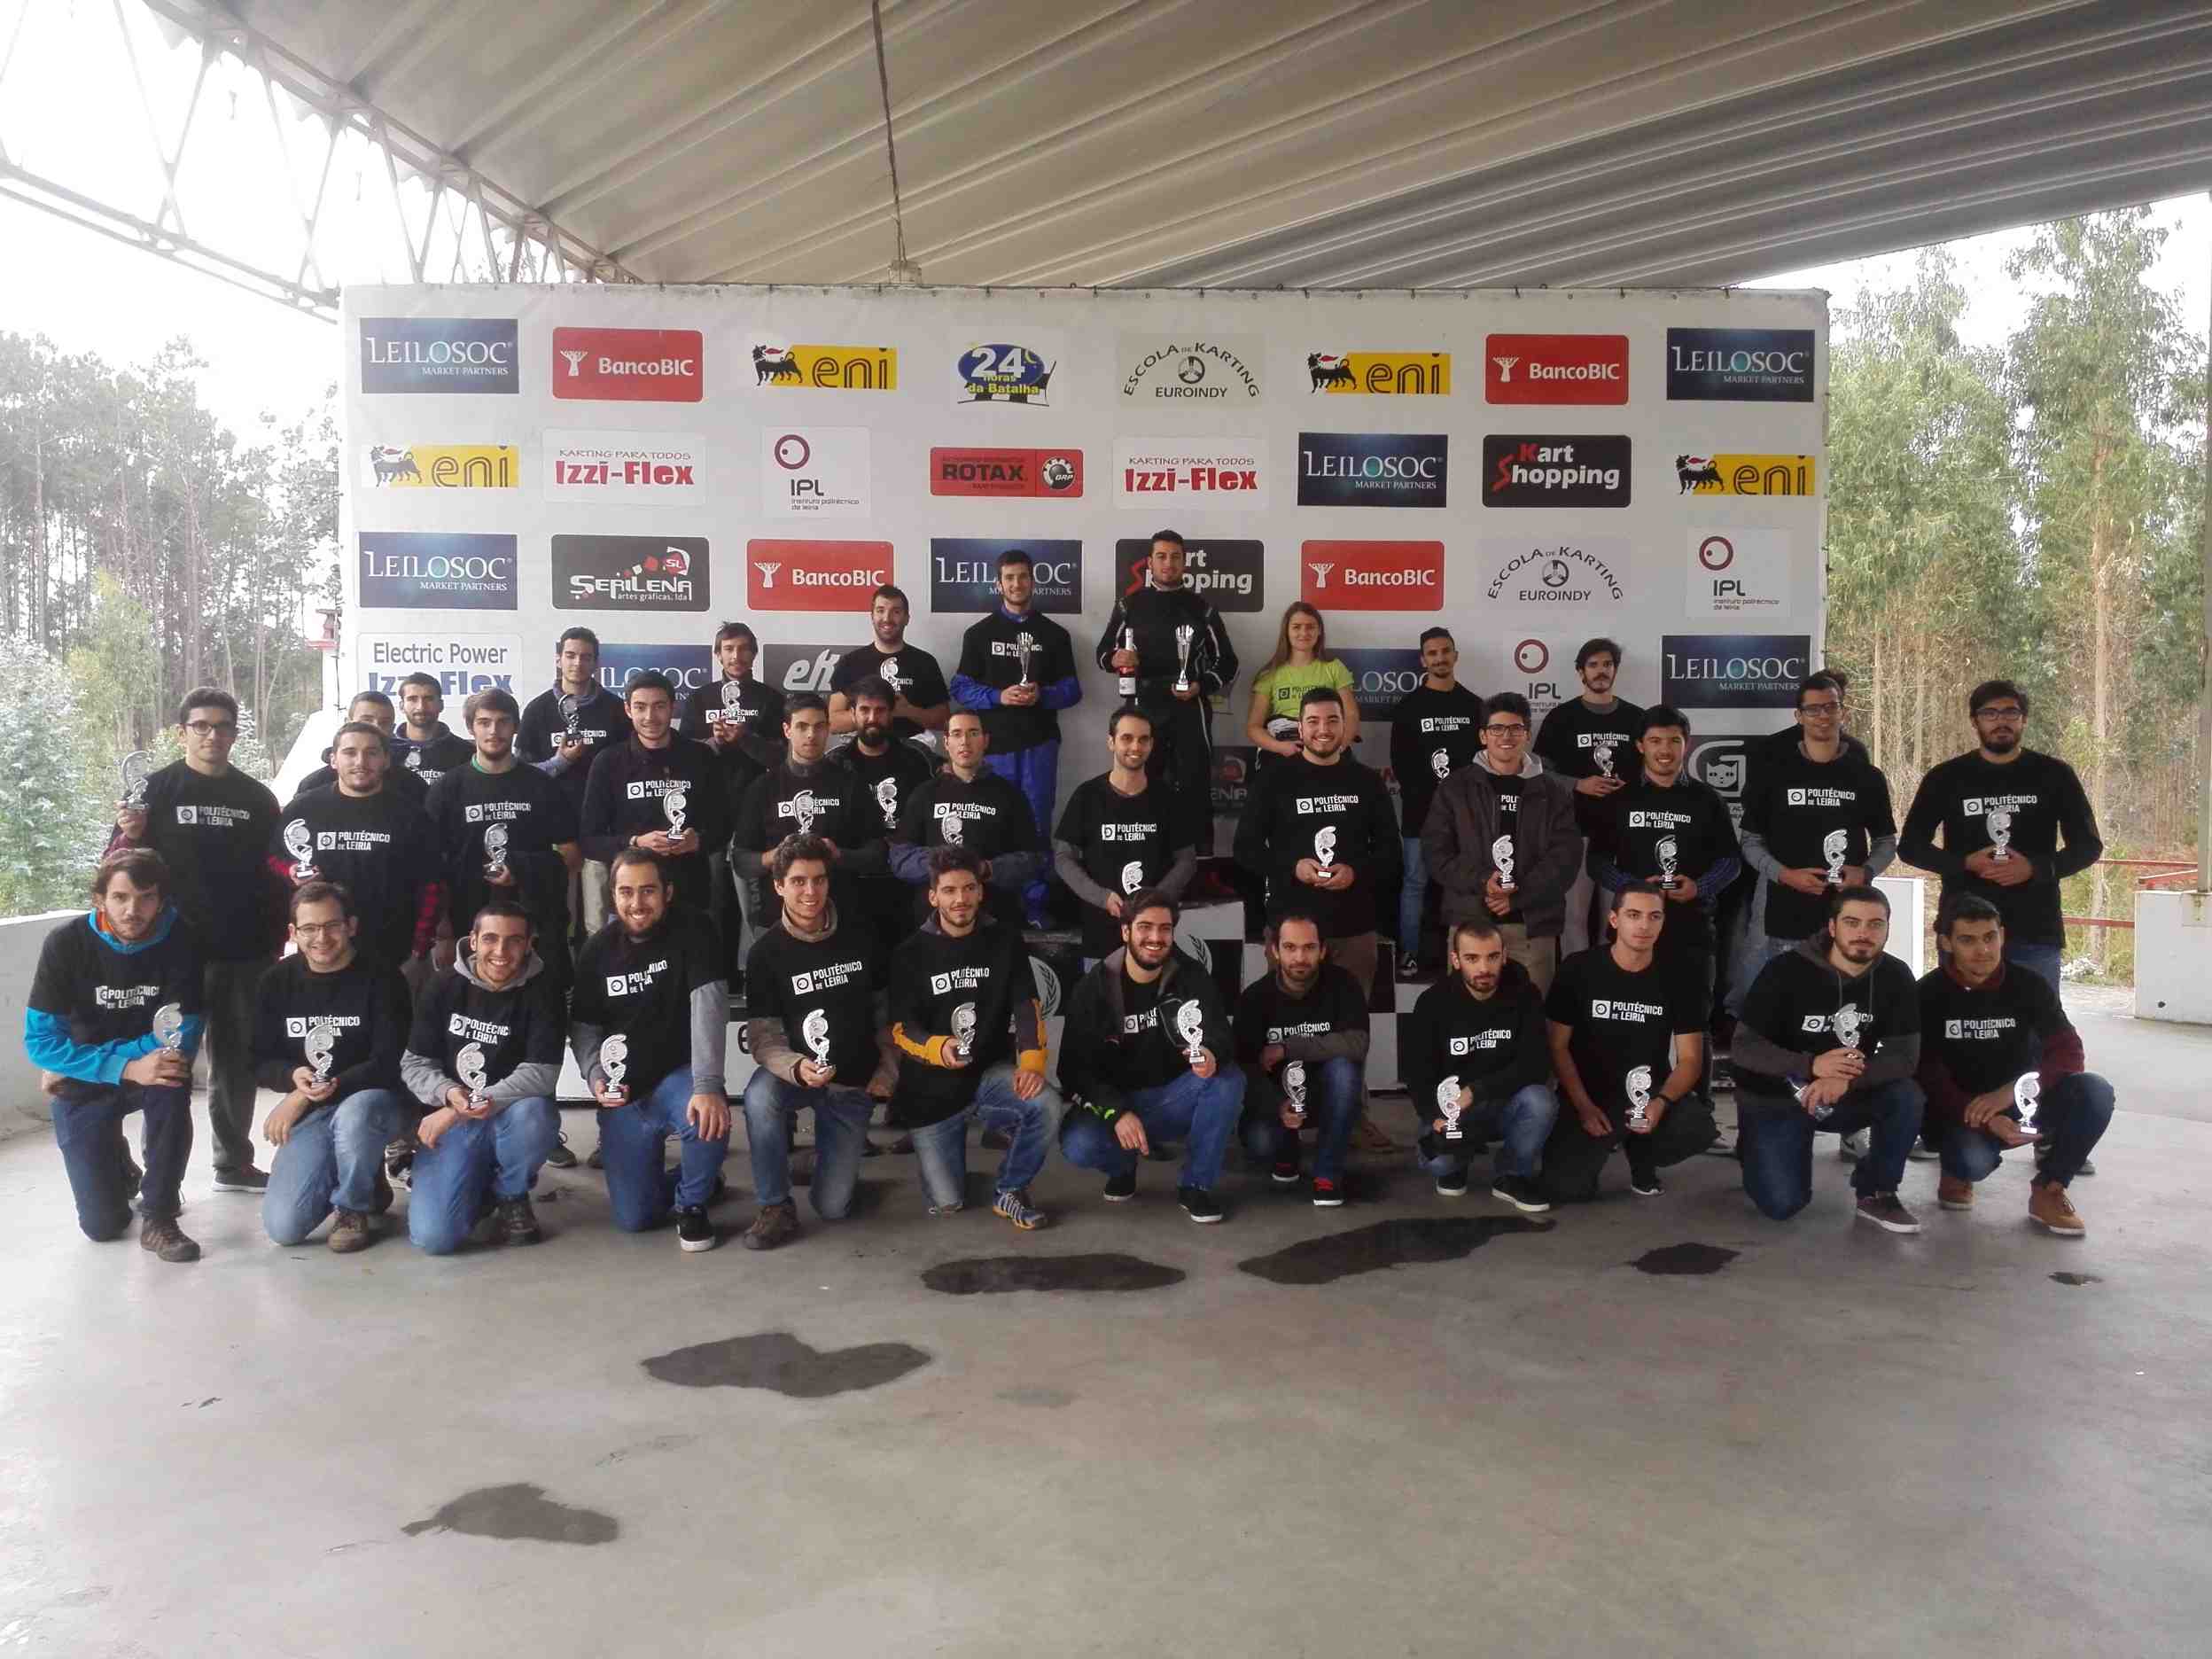 VIII Troféu de Karting do Politécnico de Leiria50